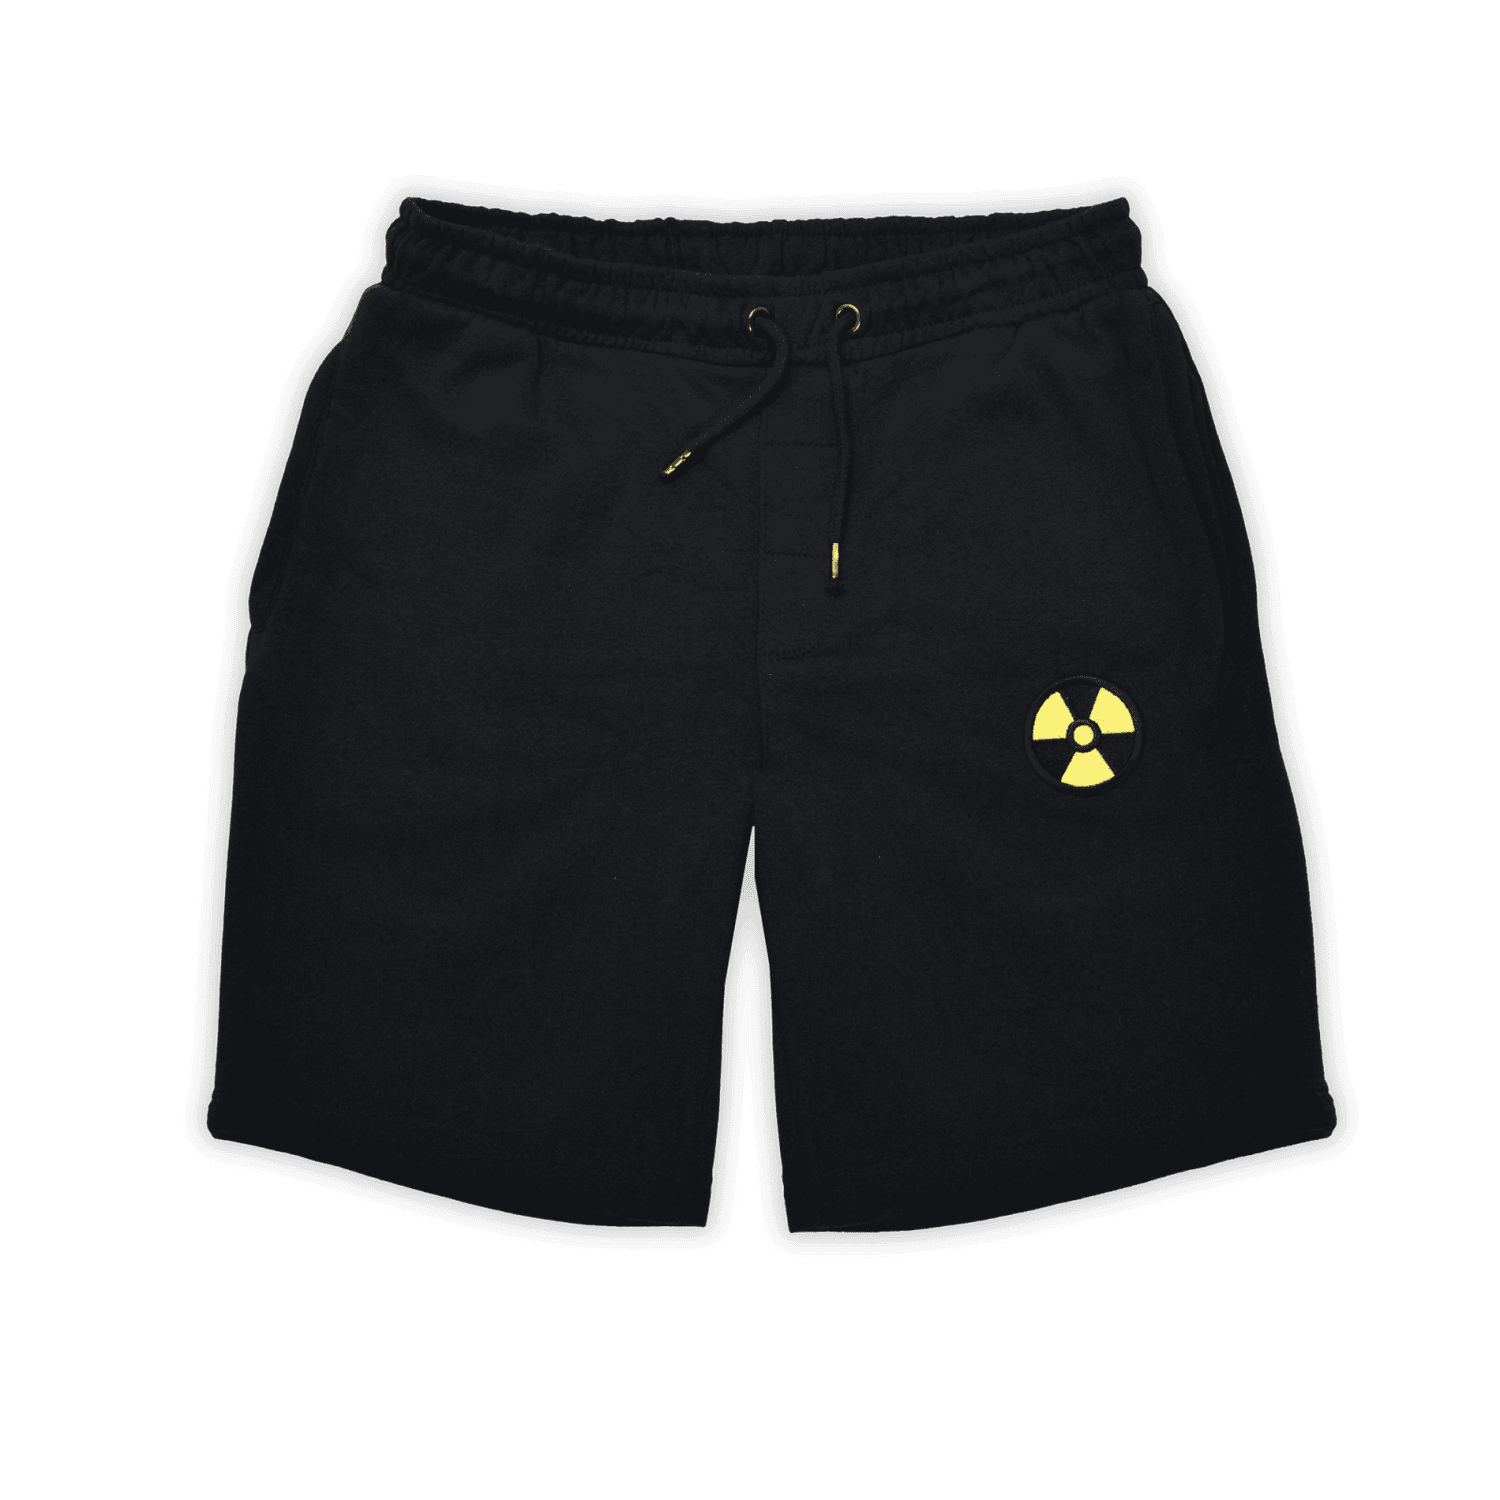 Duke Nukem Logo Embroidered Unisex Jog Shorts - Black